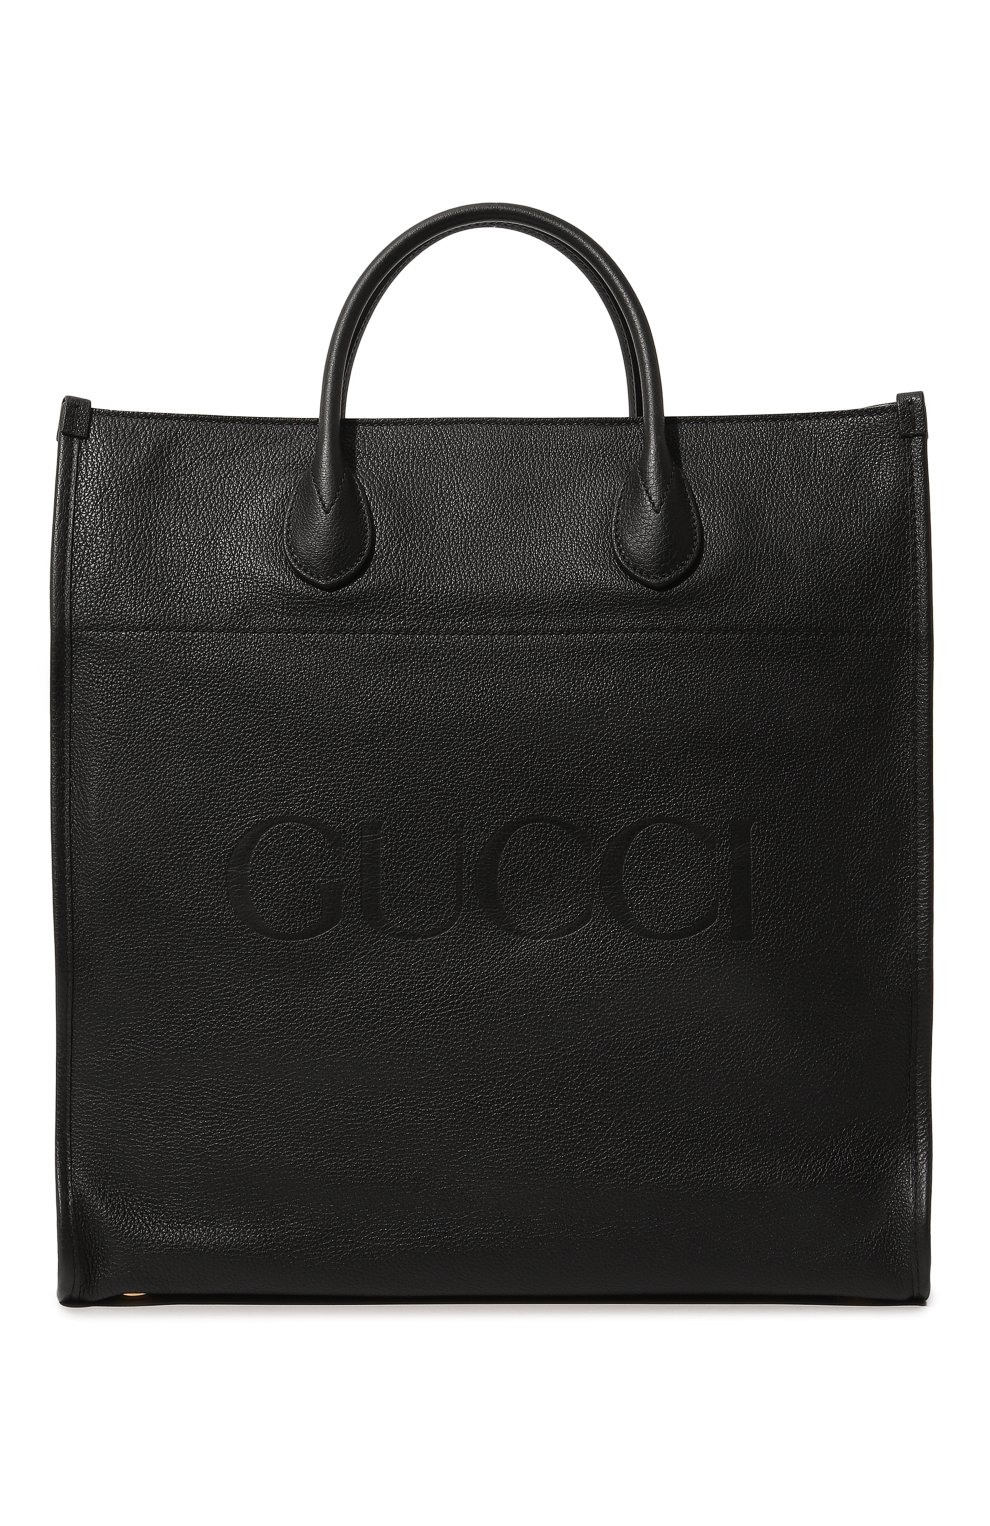 Сумки-шоперы Gucci, Кожаная сумка-тоут Gucci, Италия, Чёрный, Натуральная кожа: 100%;, 13157628  - купить